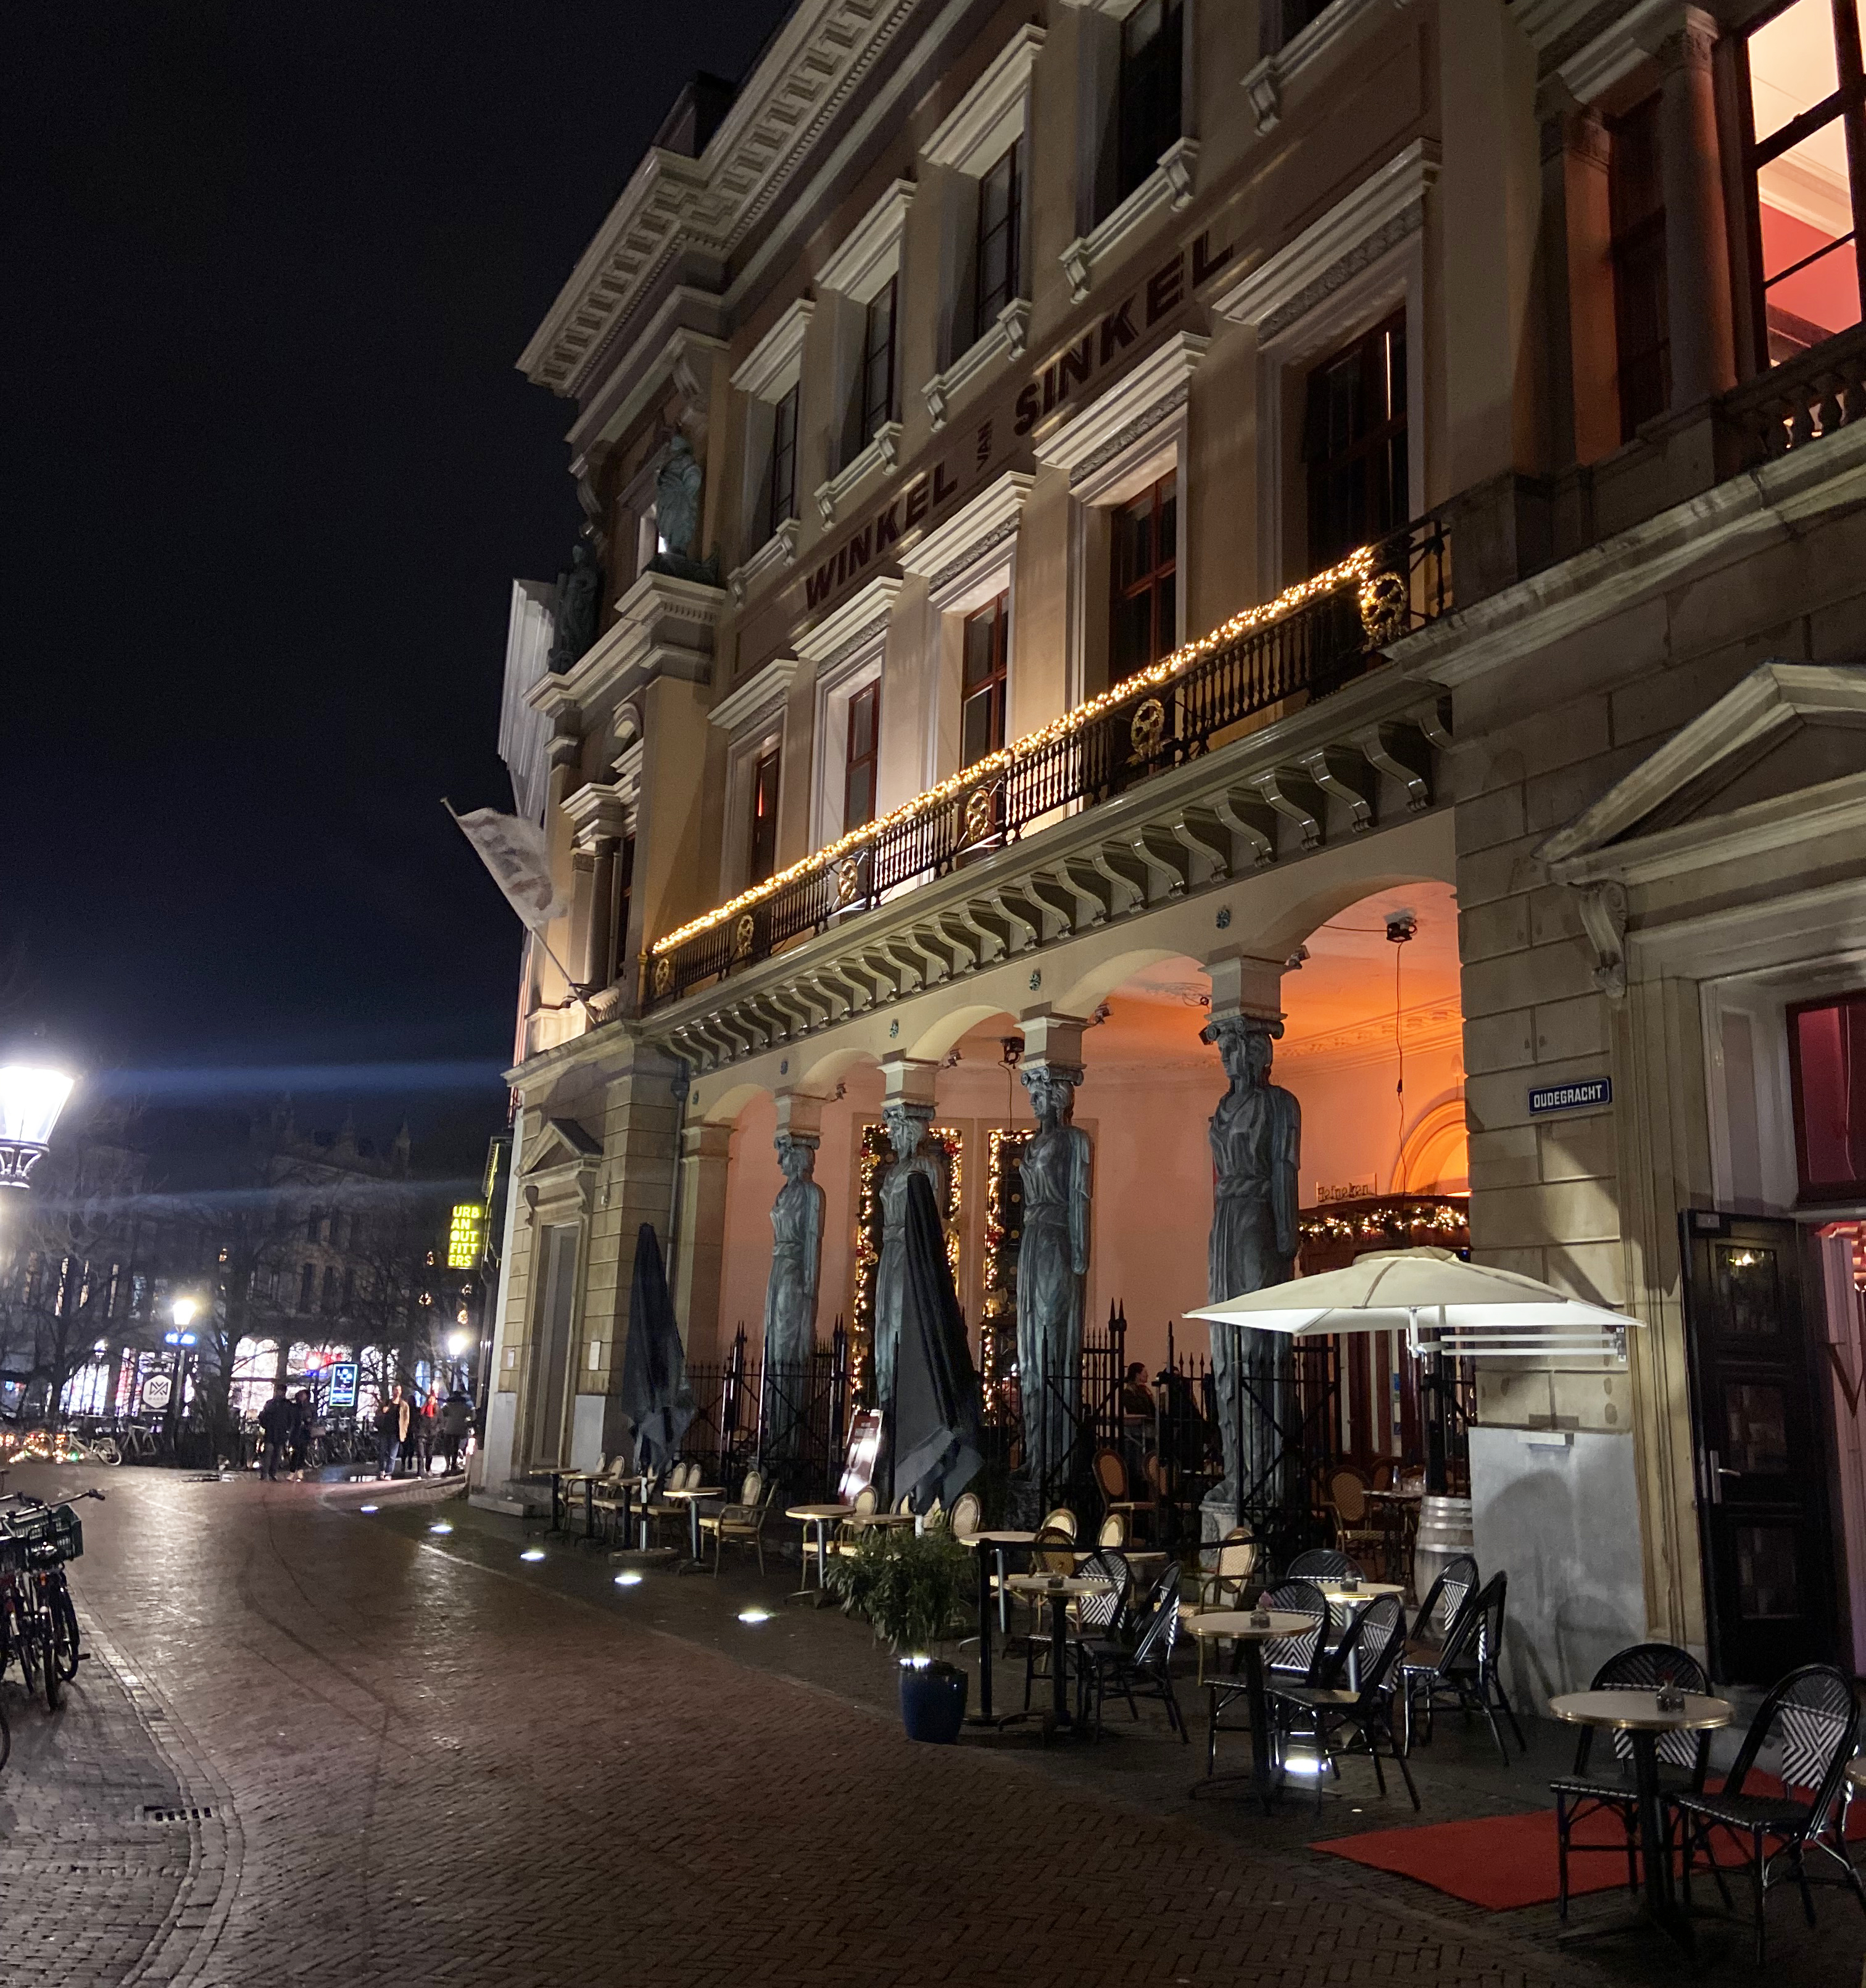 Utrecht's Oudegracht at night